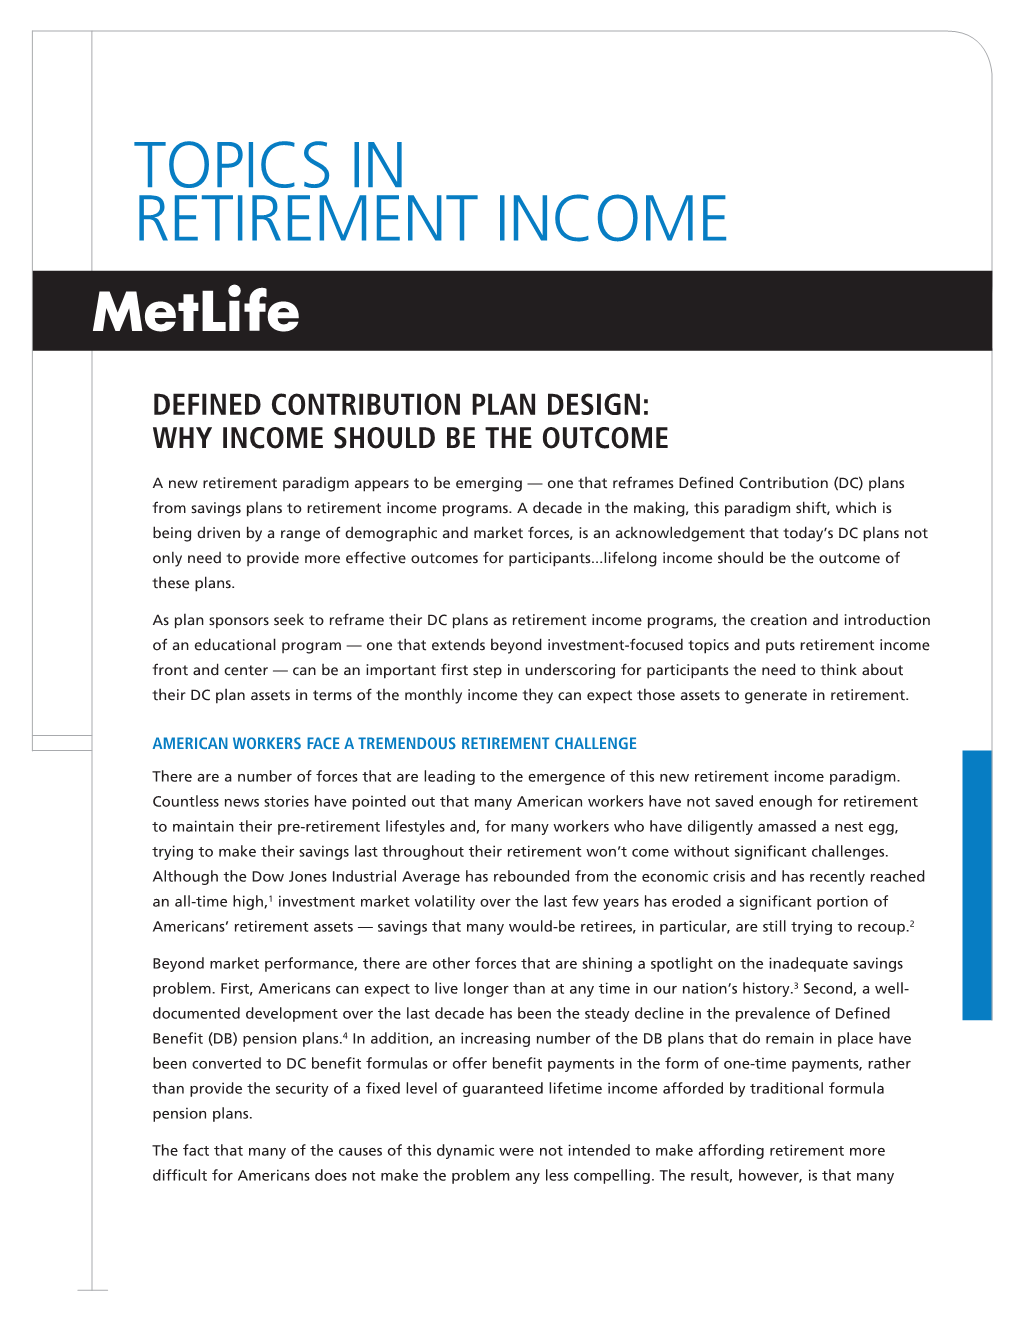 Topics in Retirement Income